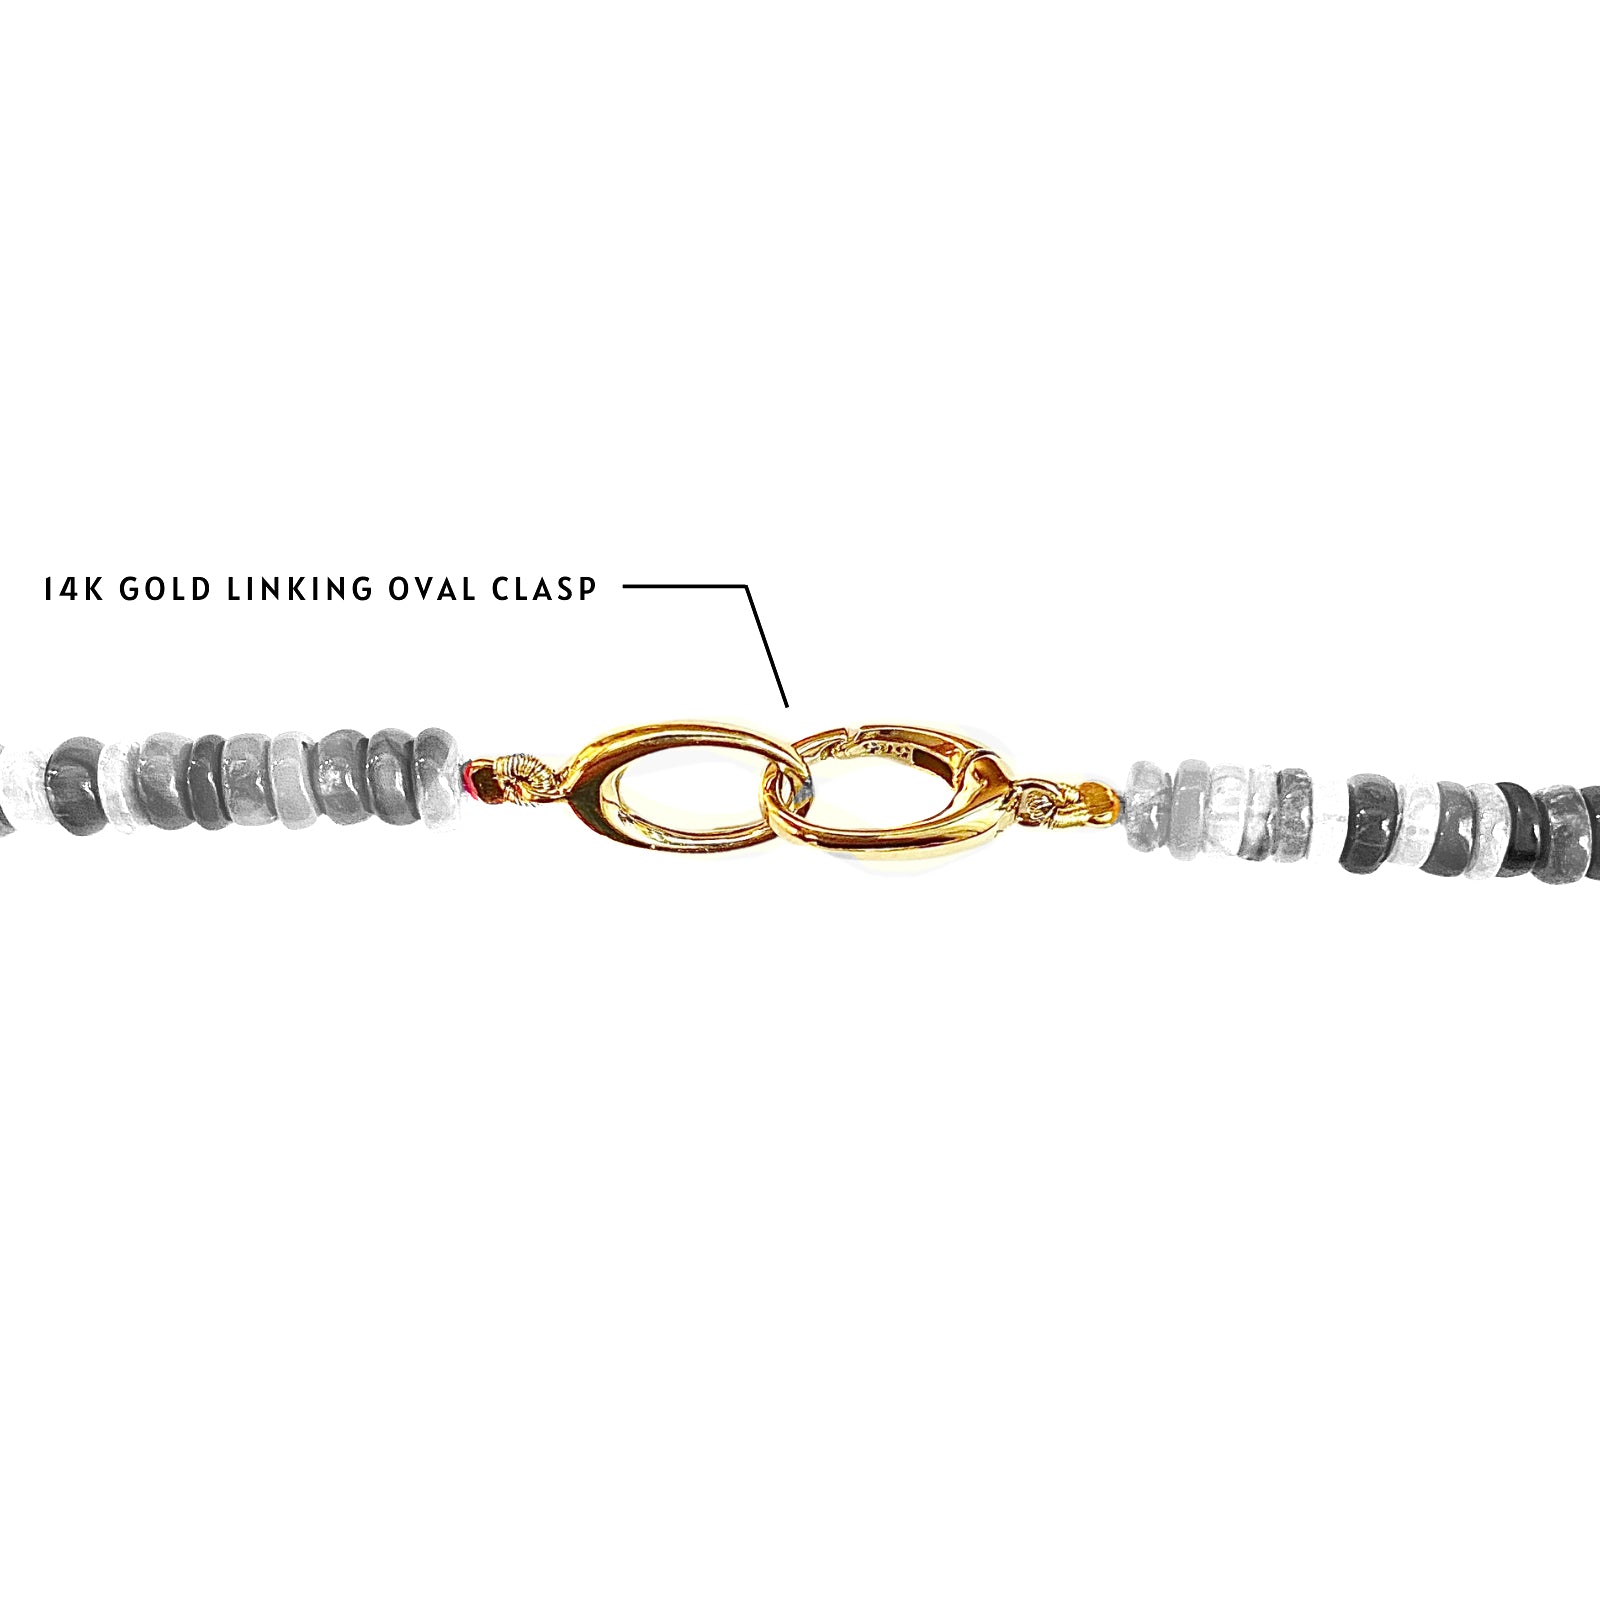 Oval Twist Lock Clasp with Diamonds, 14K Yellow Gold